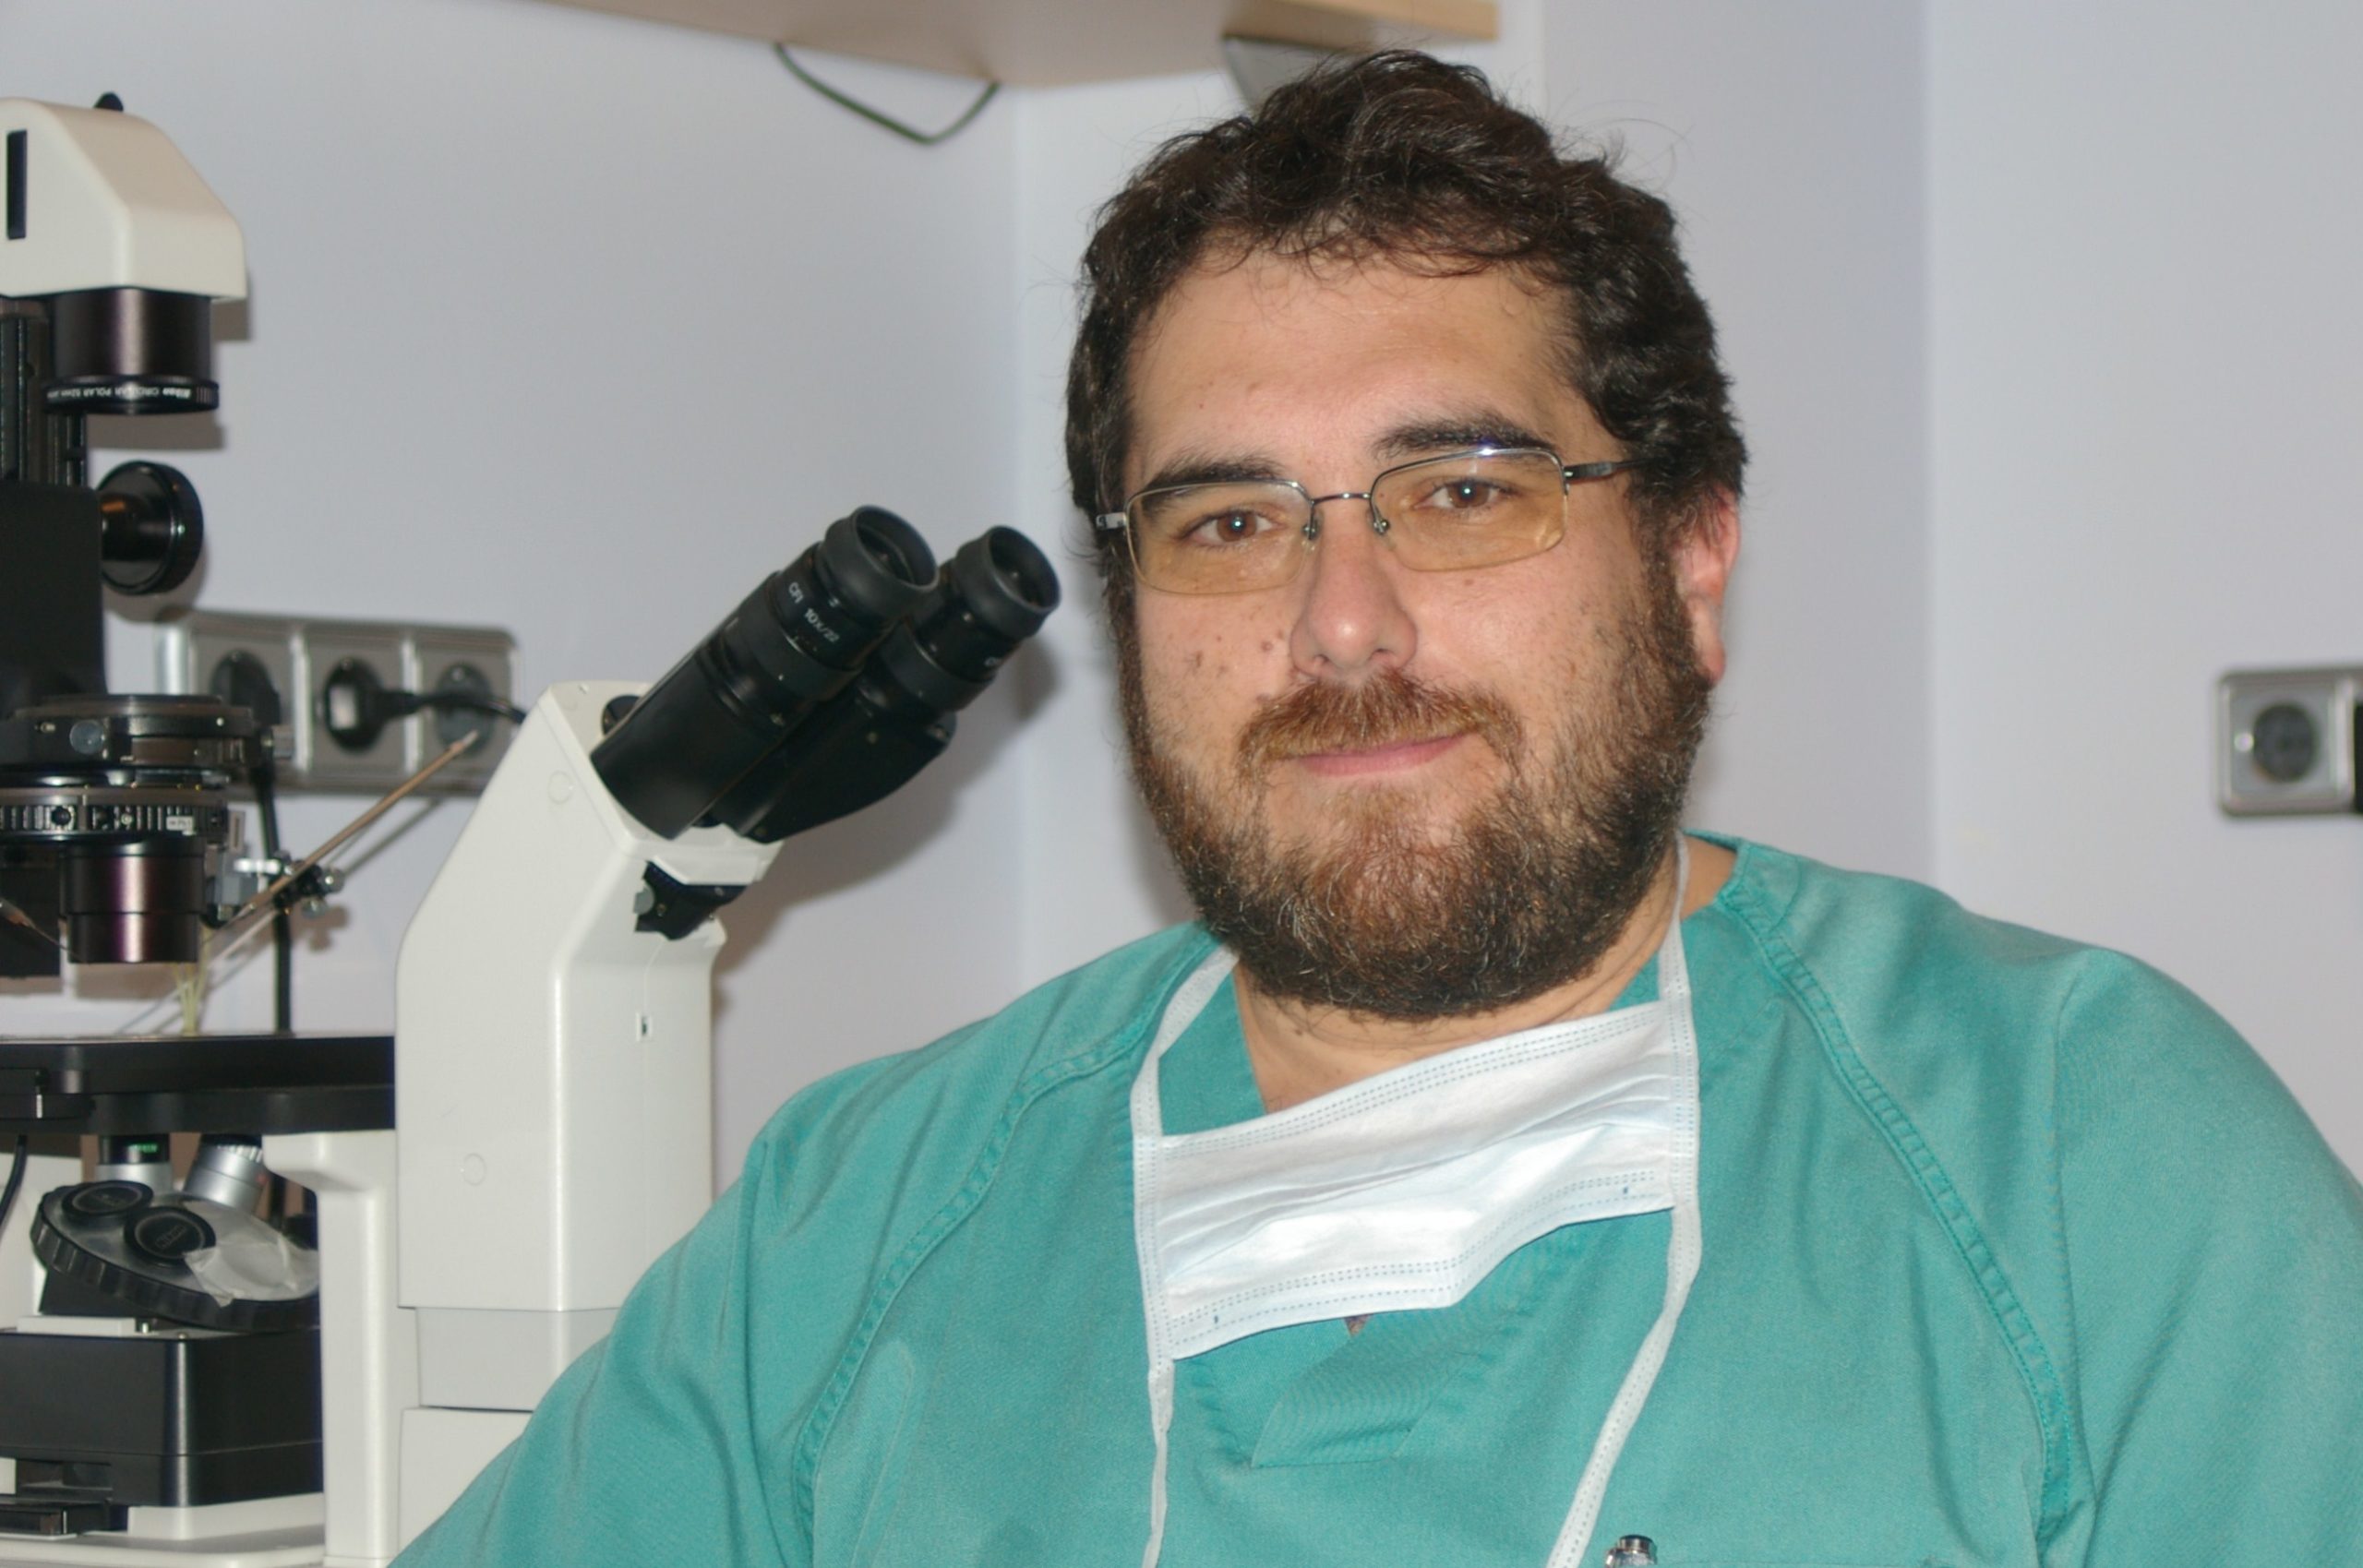 Profesional del mes (julio 2012): Dr. Ignacio Durán Salas (Almería FIV)